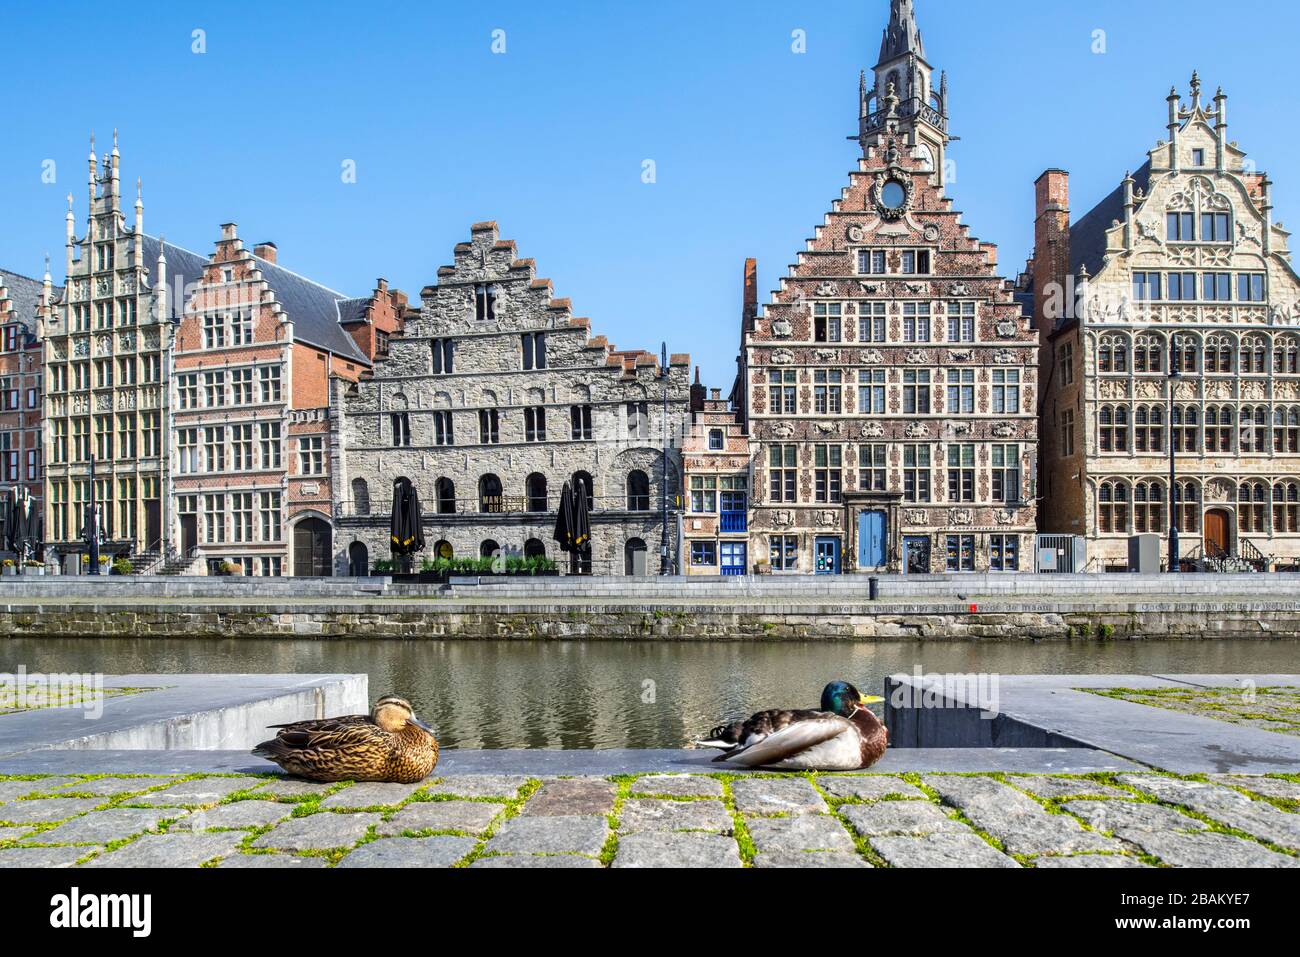 Wildes Entenpaar, das sich aufgrund der COVID-19 von 2020 / Coronavirus / Corona-Virus-Pandemie in Ostflandern, Belgien, in der menschenleeren flämischen Stadt Gent ausruht Stockfoto